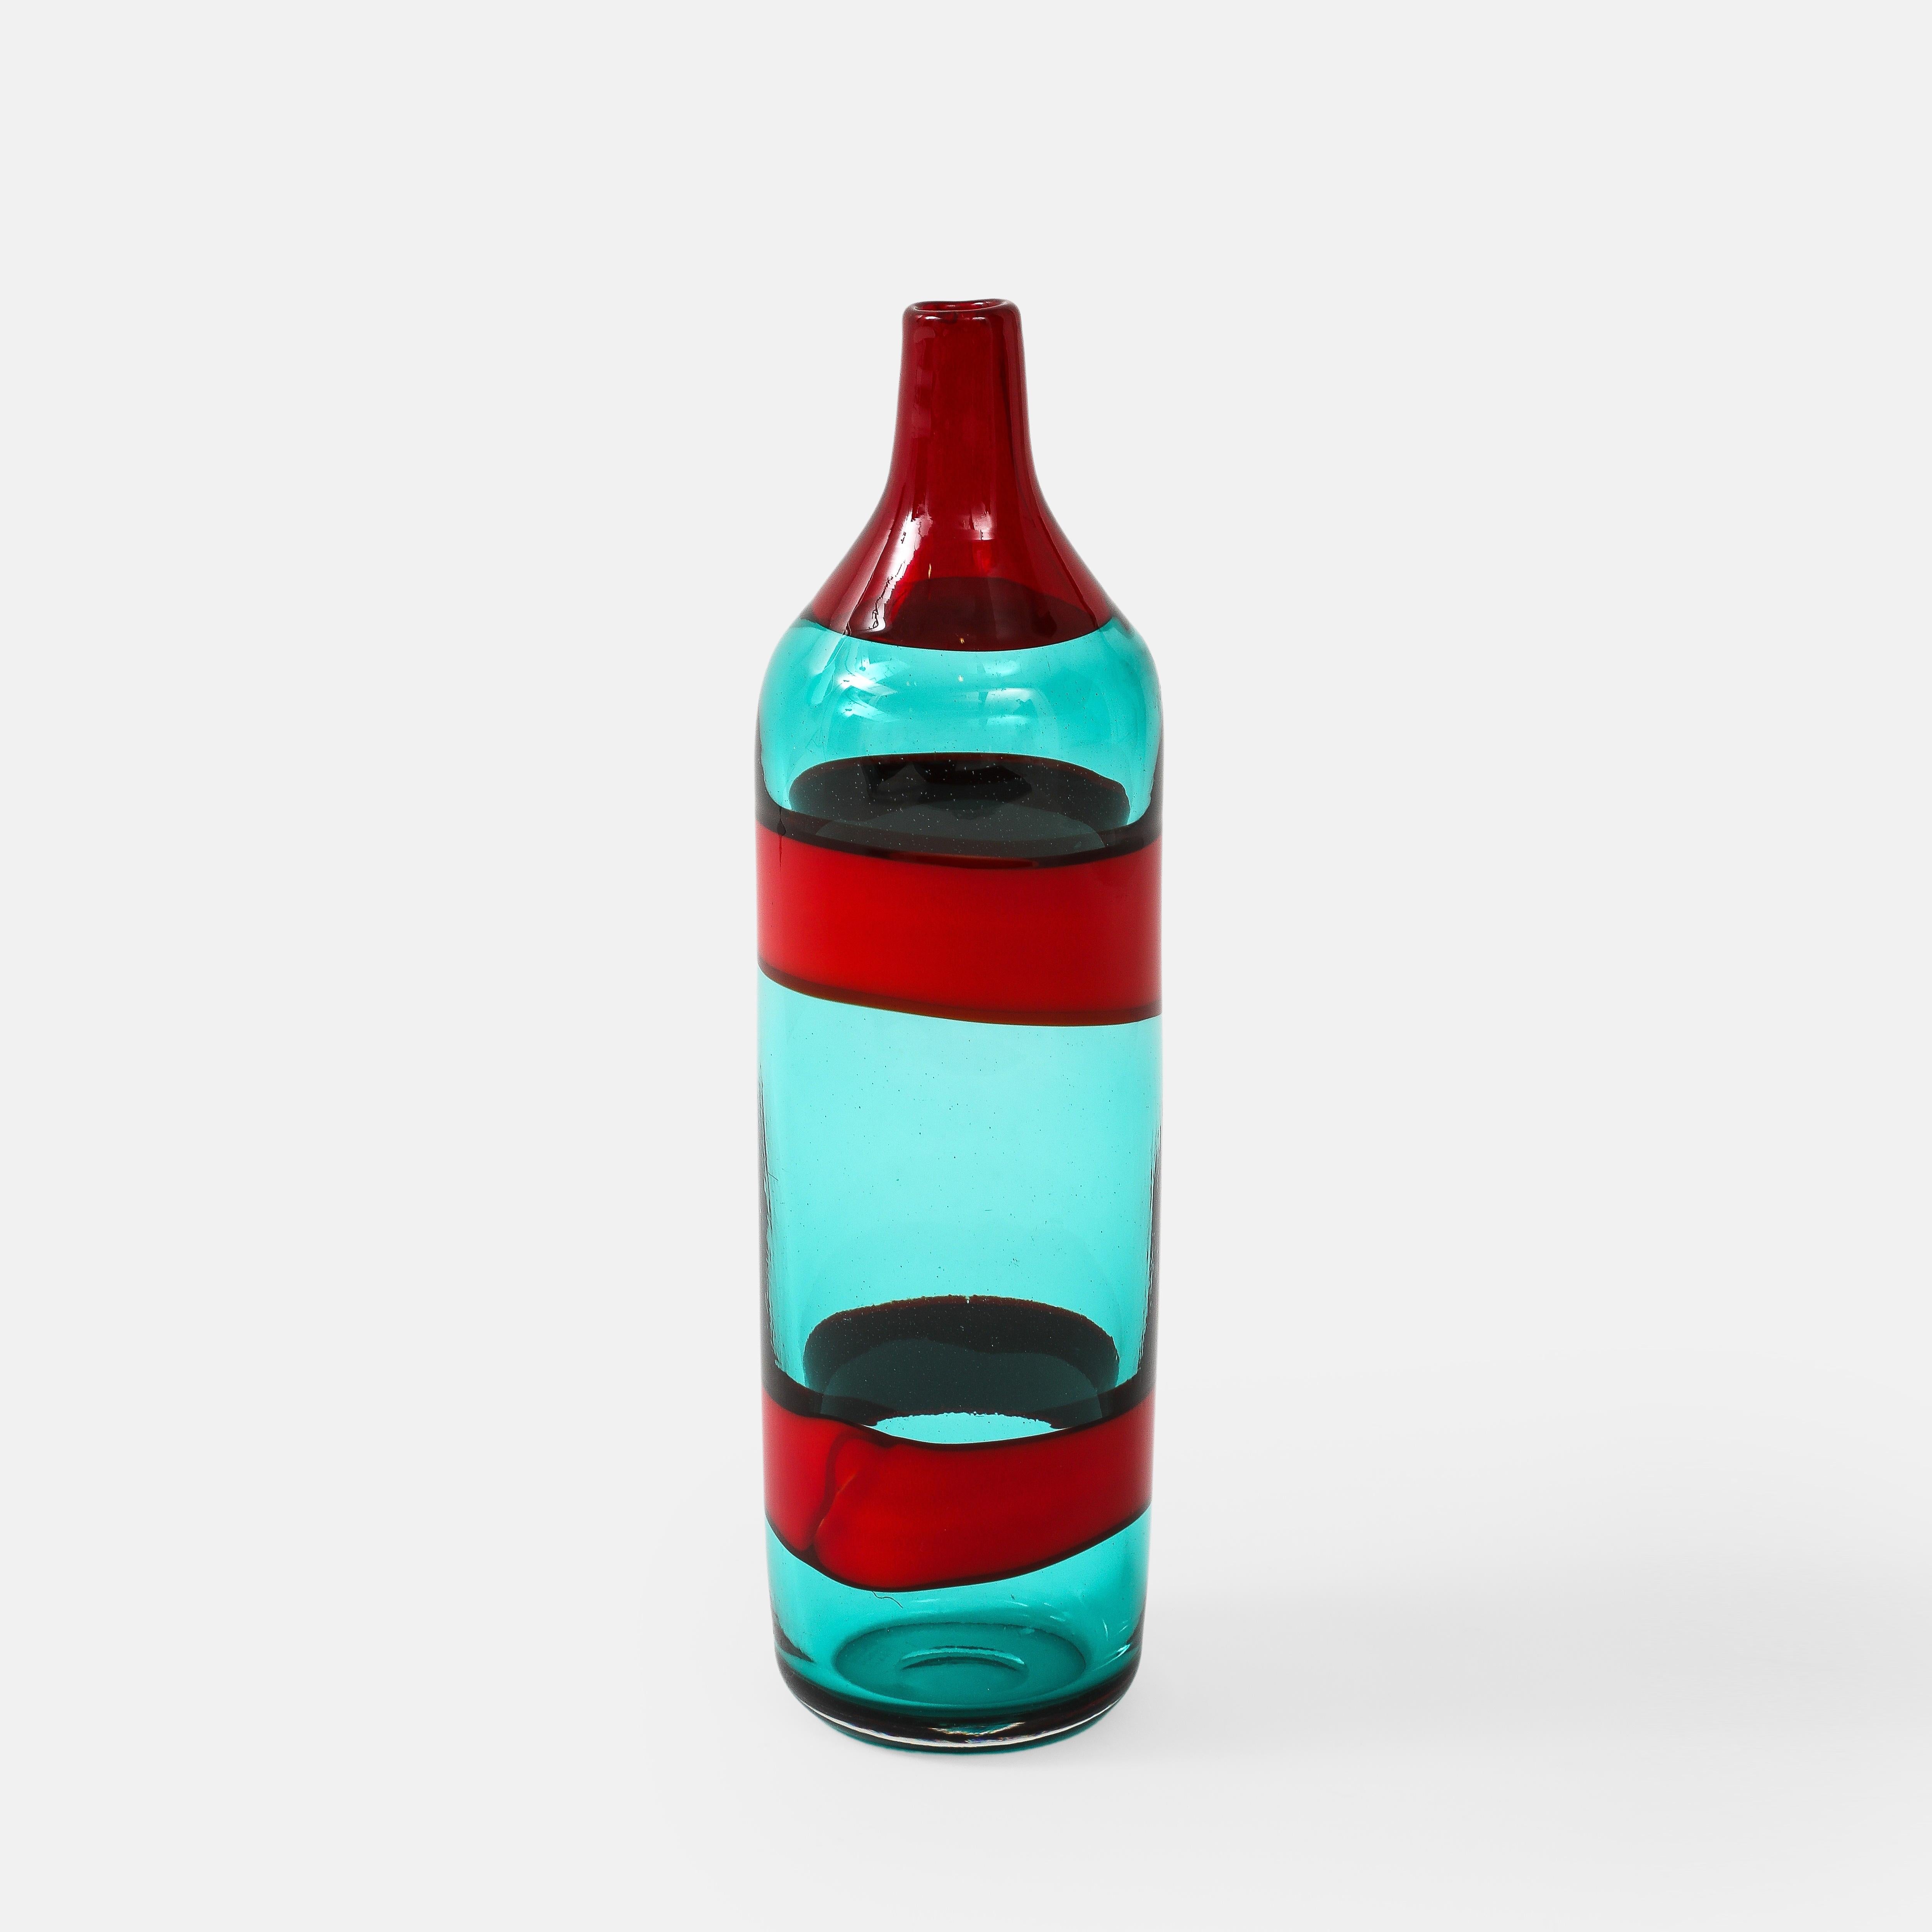 Fulvio Bianconi pour Venini Fasce Orizzontali grande bouteille modèle 4315 en verre transparent bleu vert décoré sur le corps de deux bandes horizontales en rouge opaque et sur le col d'une seule bande rouge transparente, Italie, vers 1950.  Bien